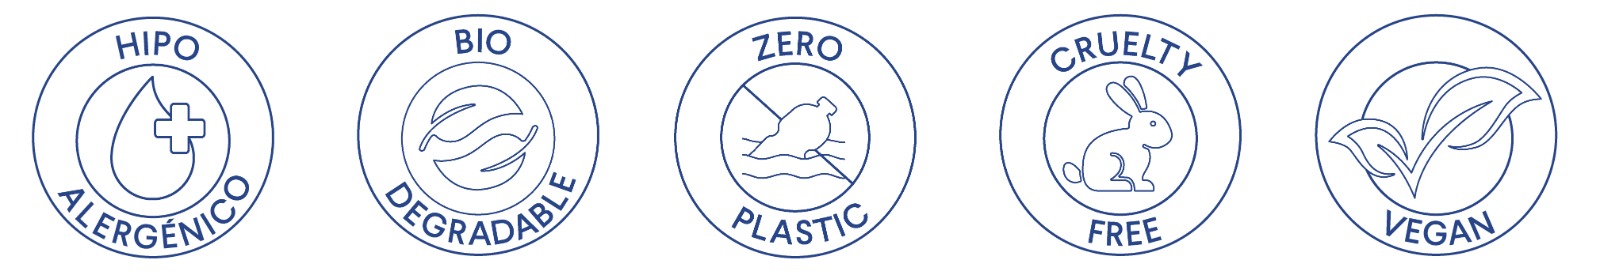 Conoce nuestras certificaciones Hipoalergénico, Biodegradable, Zero Plastic, Cruelty Free y Vegan.